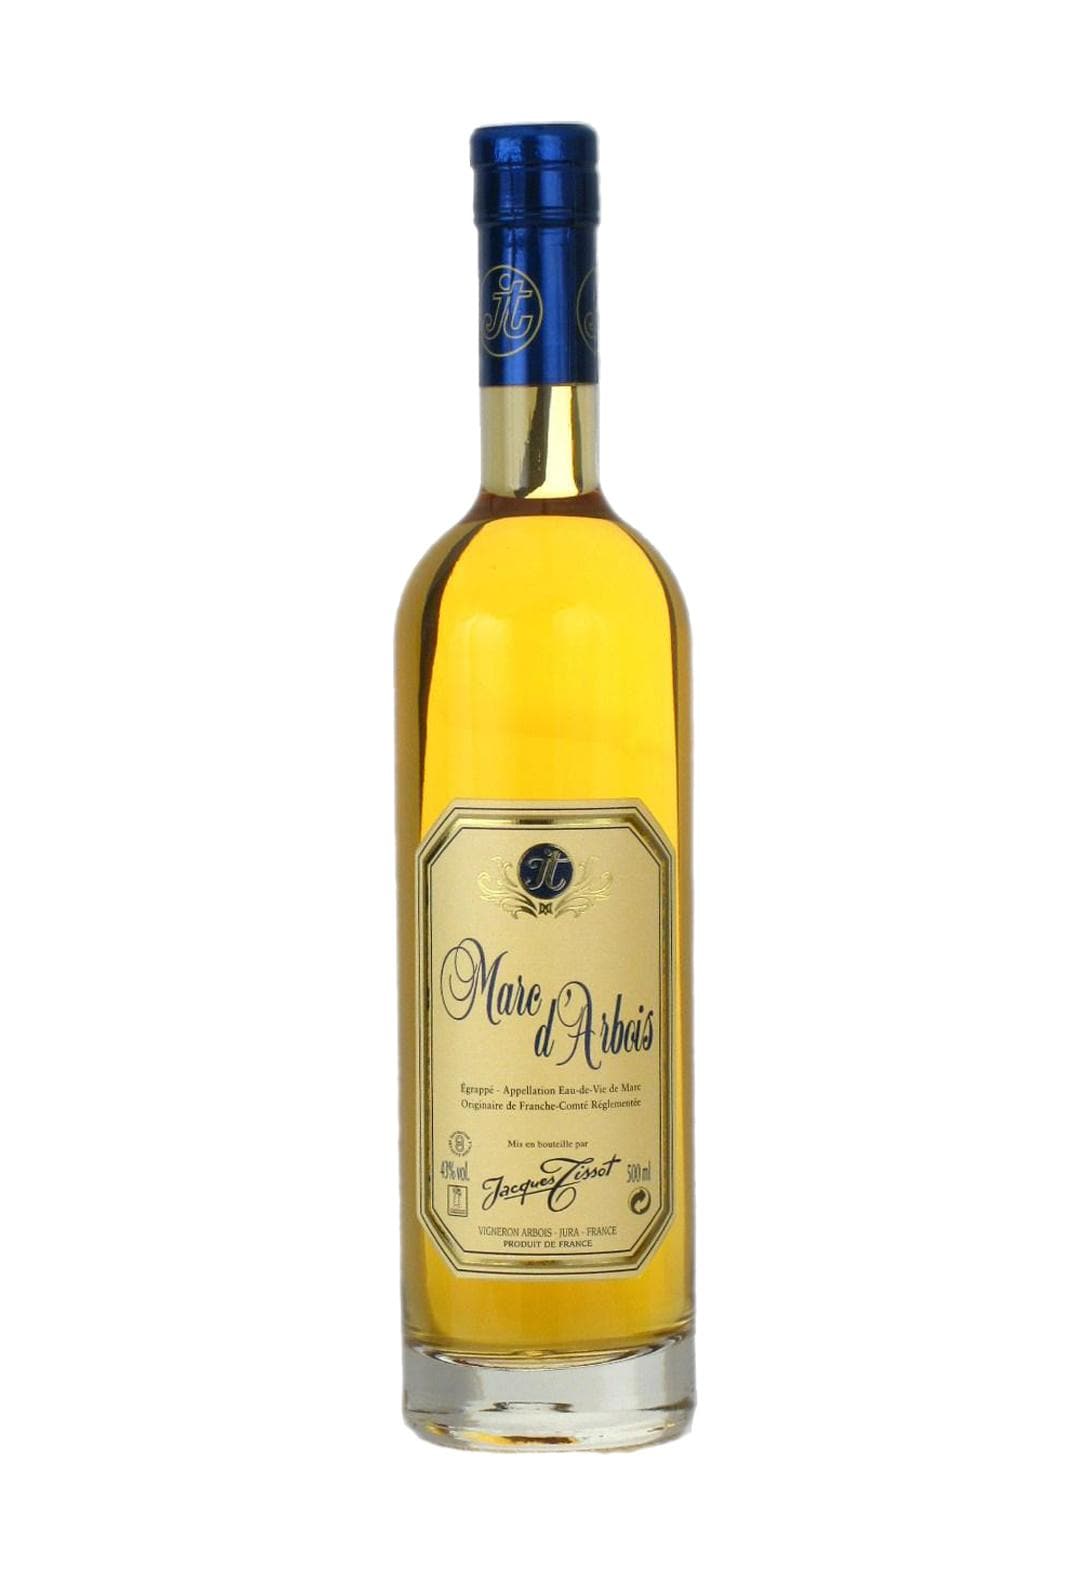 Jacques Tissot Vieux Marc d'Arbois (Red grape varietals) 43% 500ml | Rum | Shop online at Spirits of France